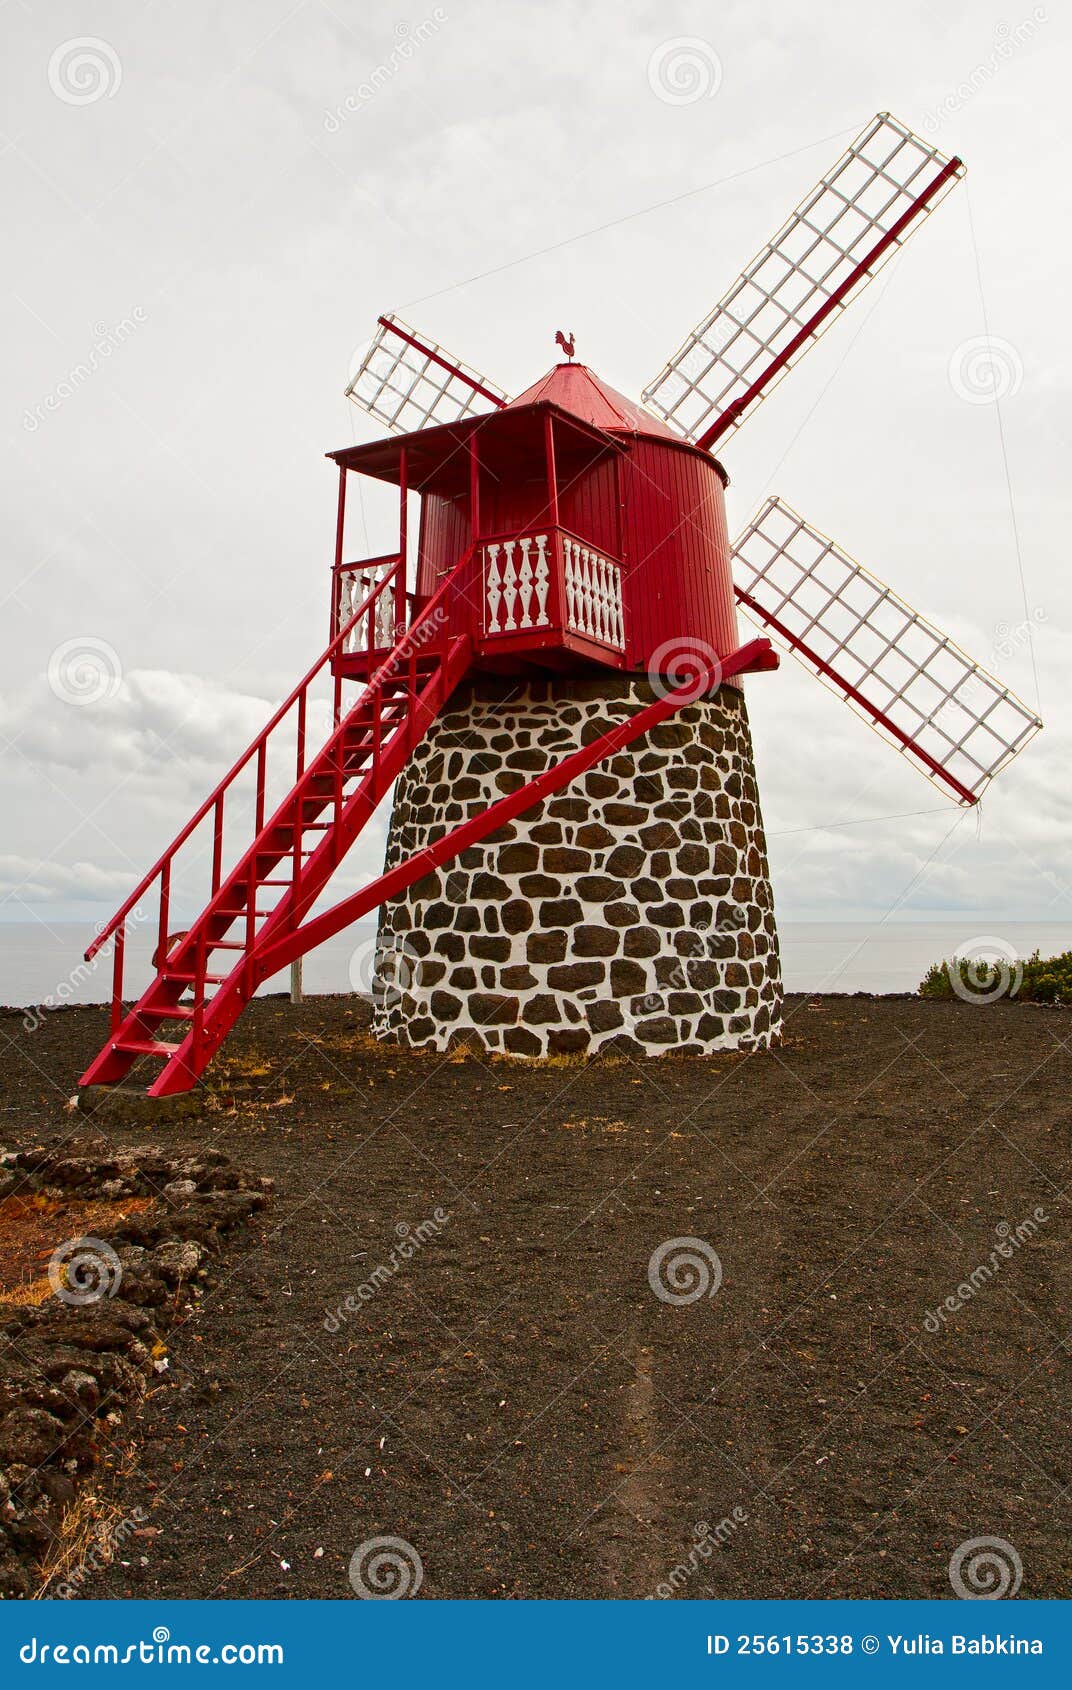 De windmolen op de kust van de oceaan. Het symbool van de Azoren is een traditionele windmolen